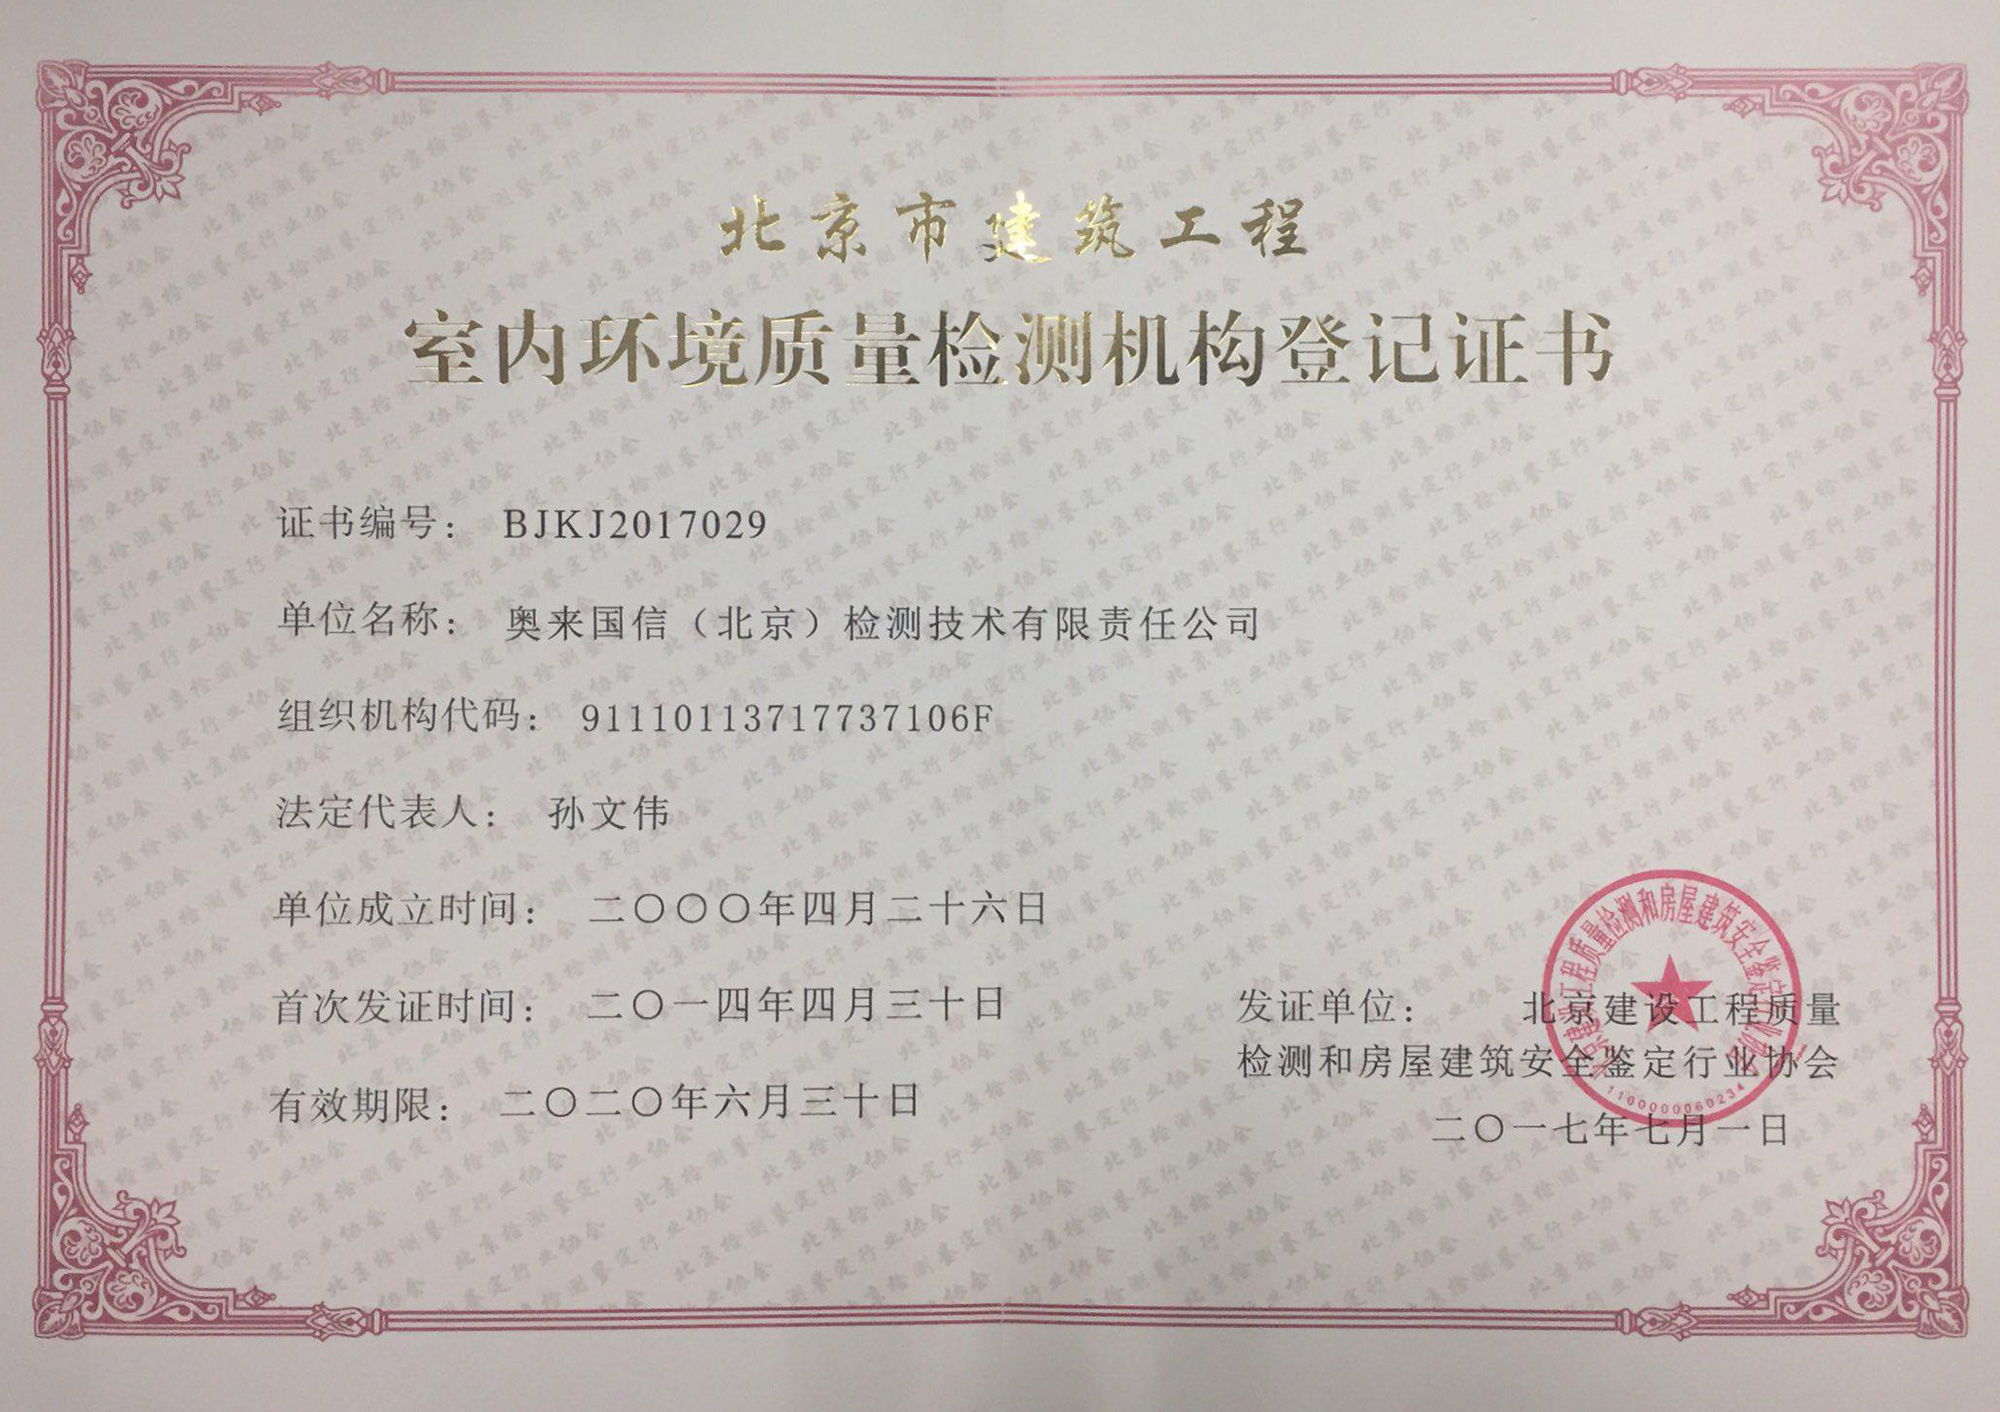 北京市建筑工程室内环境质量检测机构登记证书